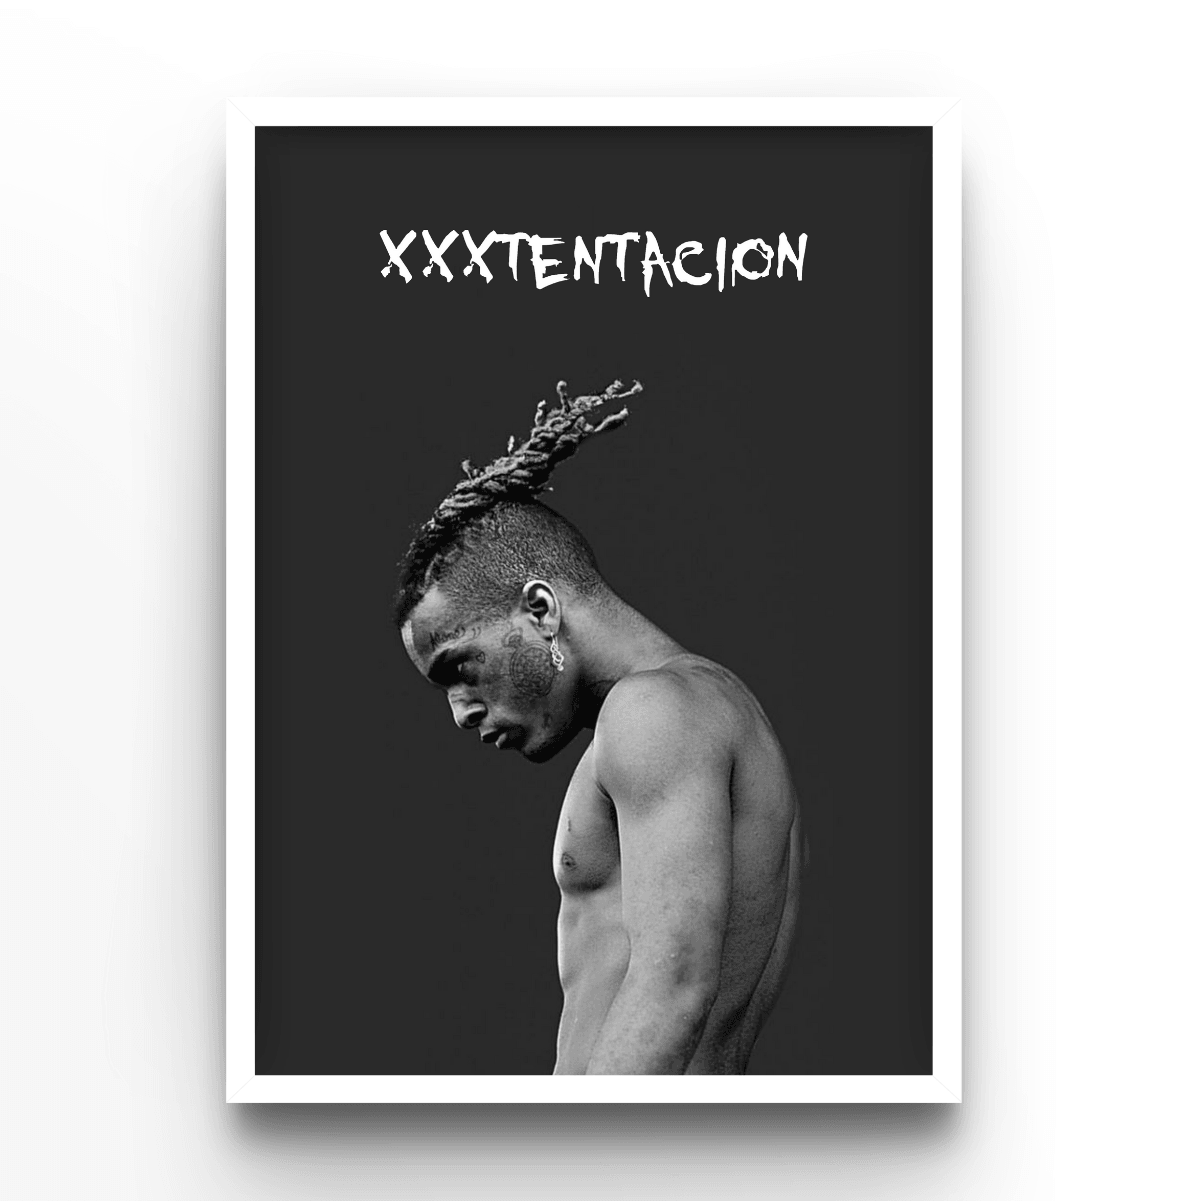 XXXTentacion - A4, A3, A2 Posters Base - Poster Print Shop / Art Prints / PostersBase